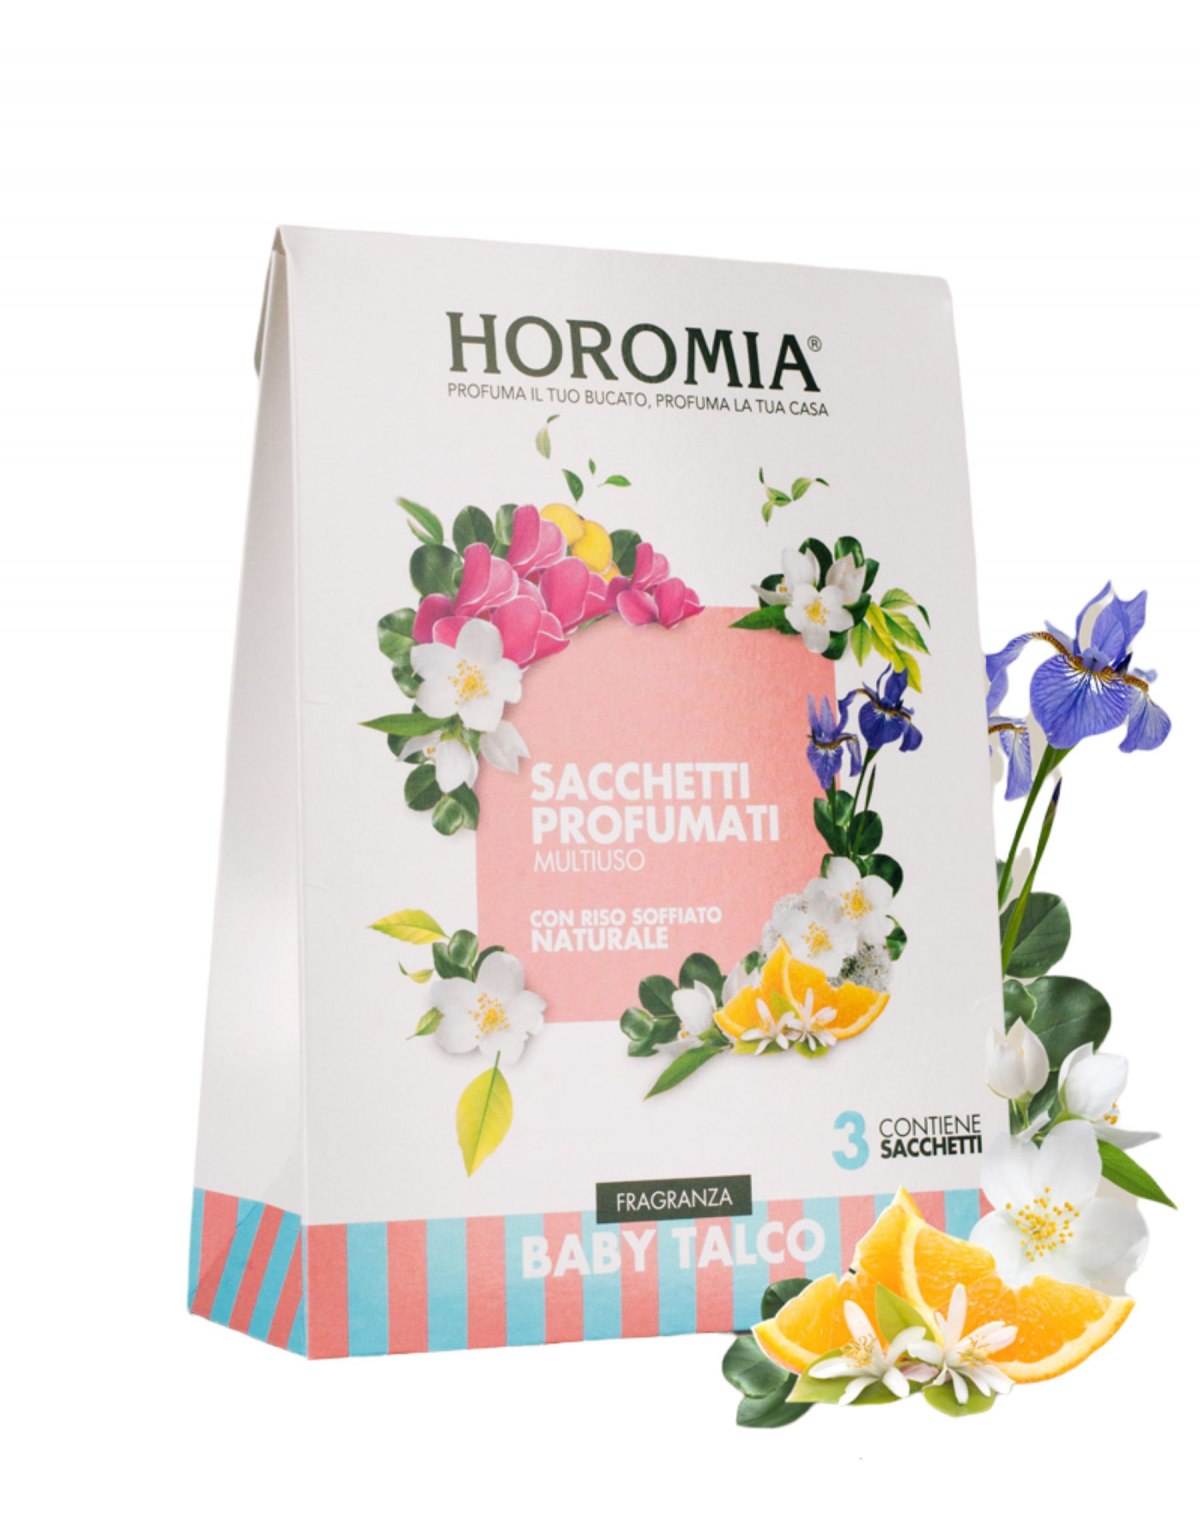 Nuova fragranza Profuma Bucato Horomia, fiorita, agreste, legnosa